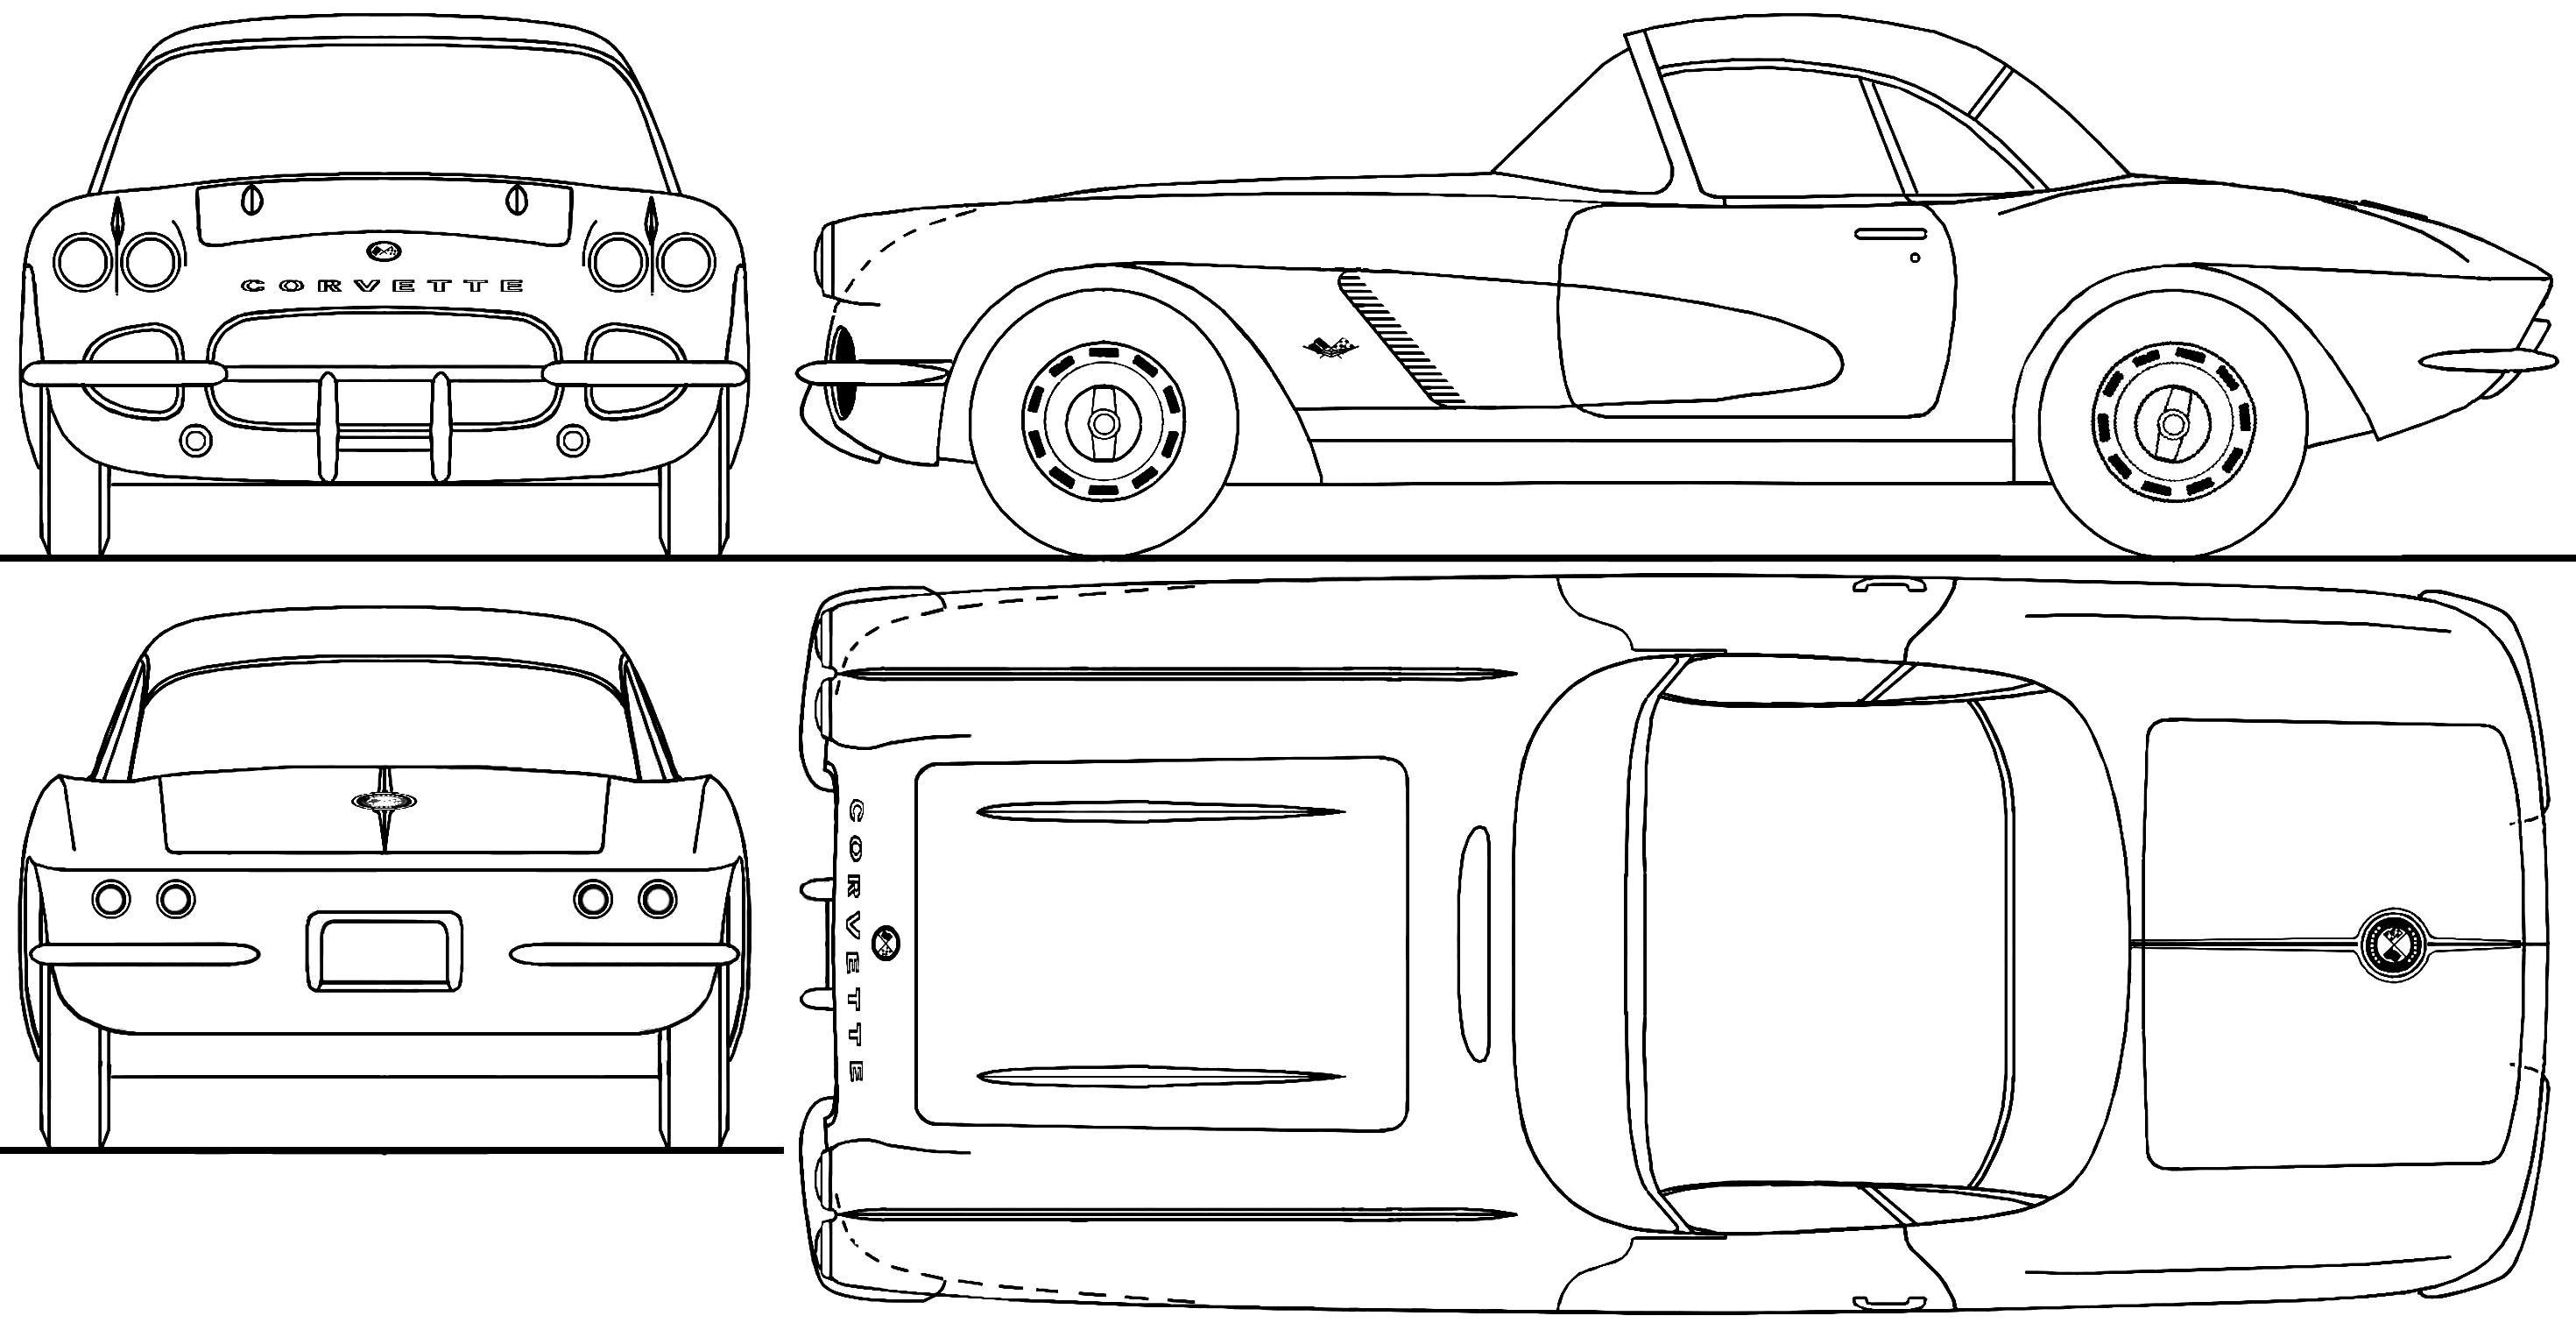 Chevrolet Corvette blueprint